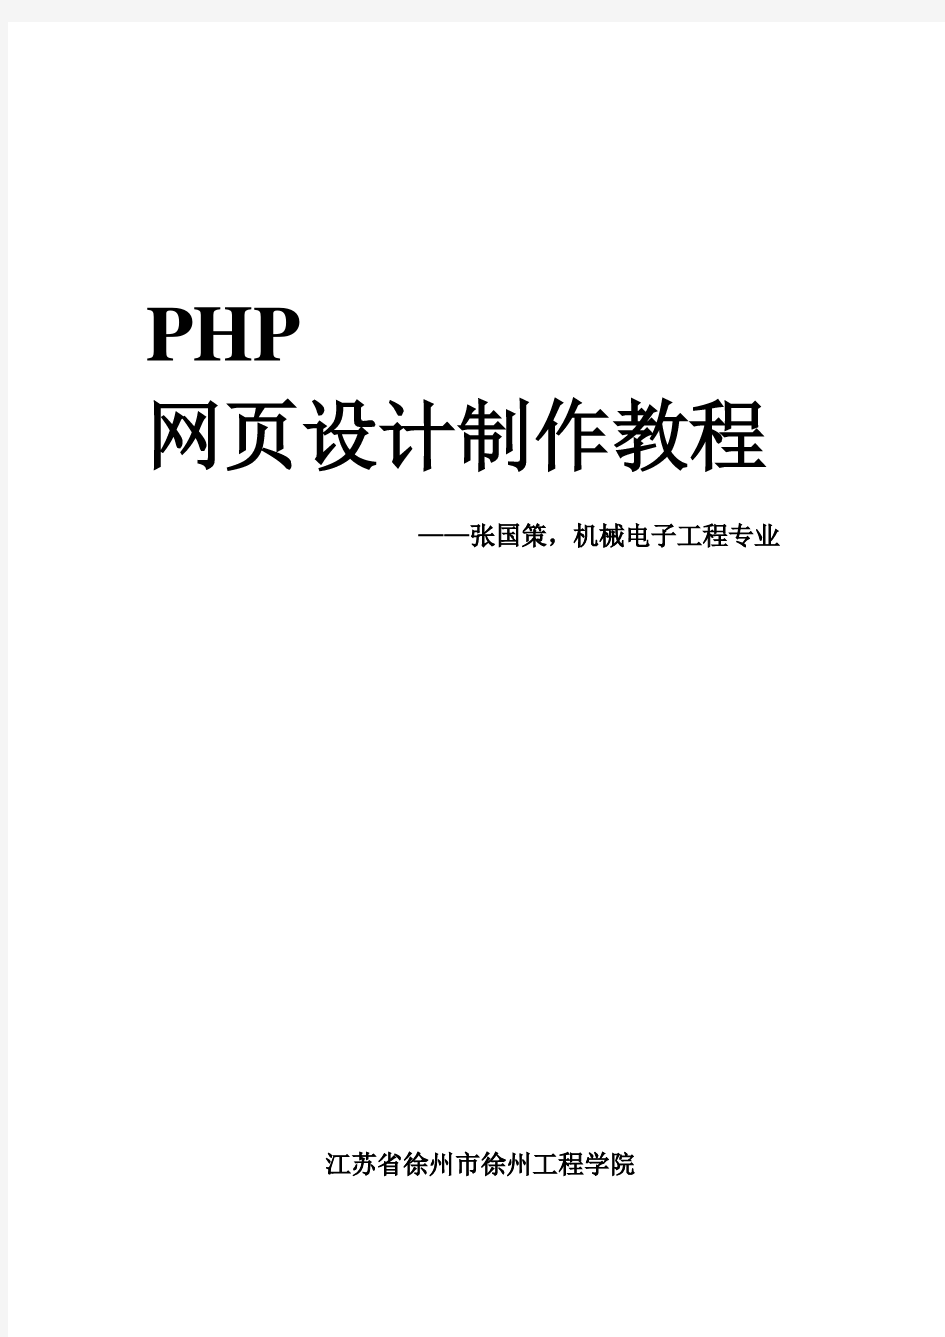 php网页设计制作